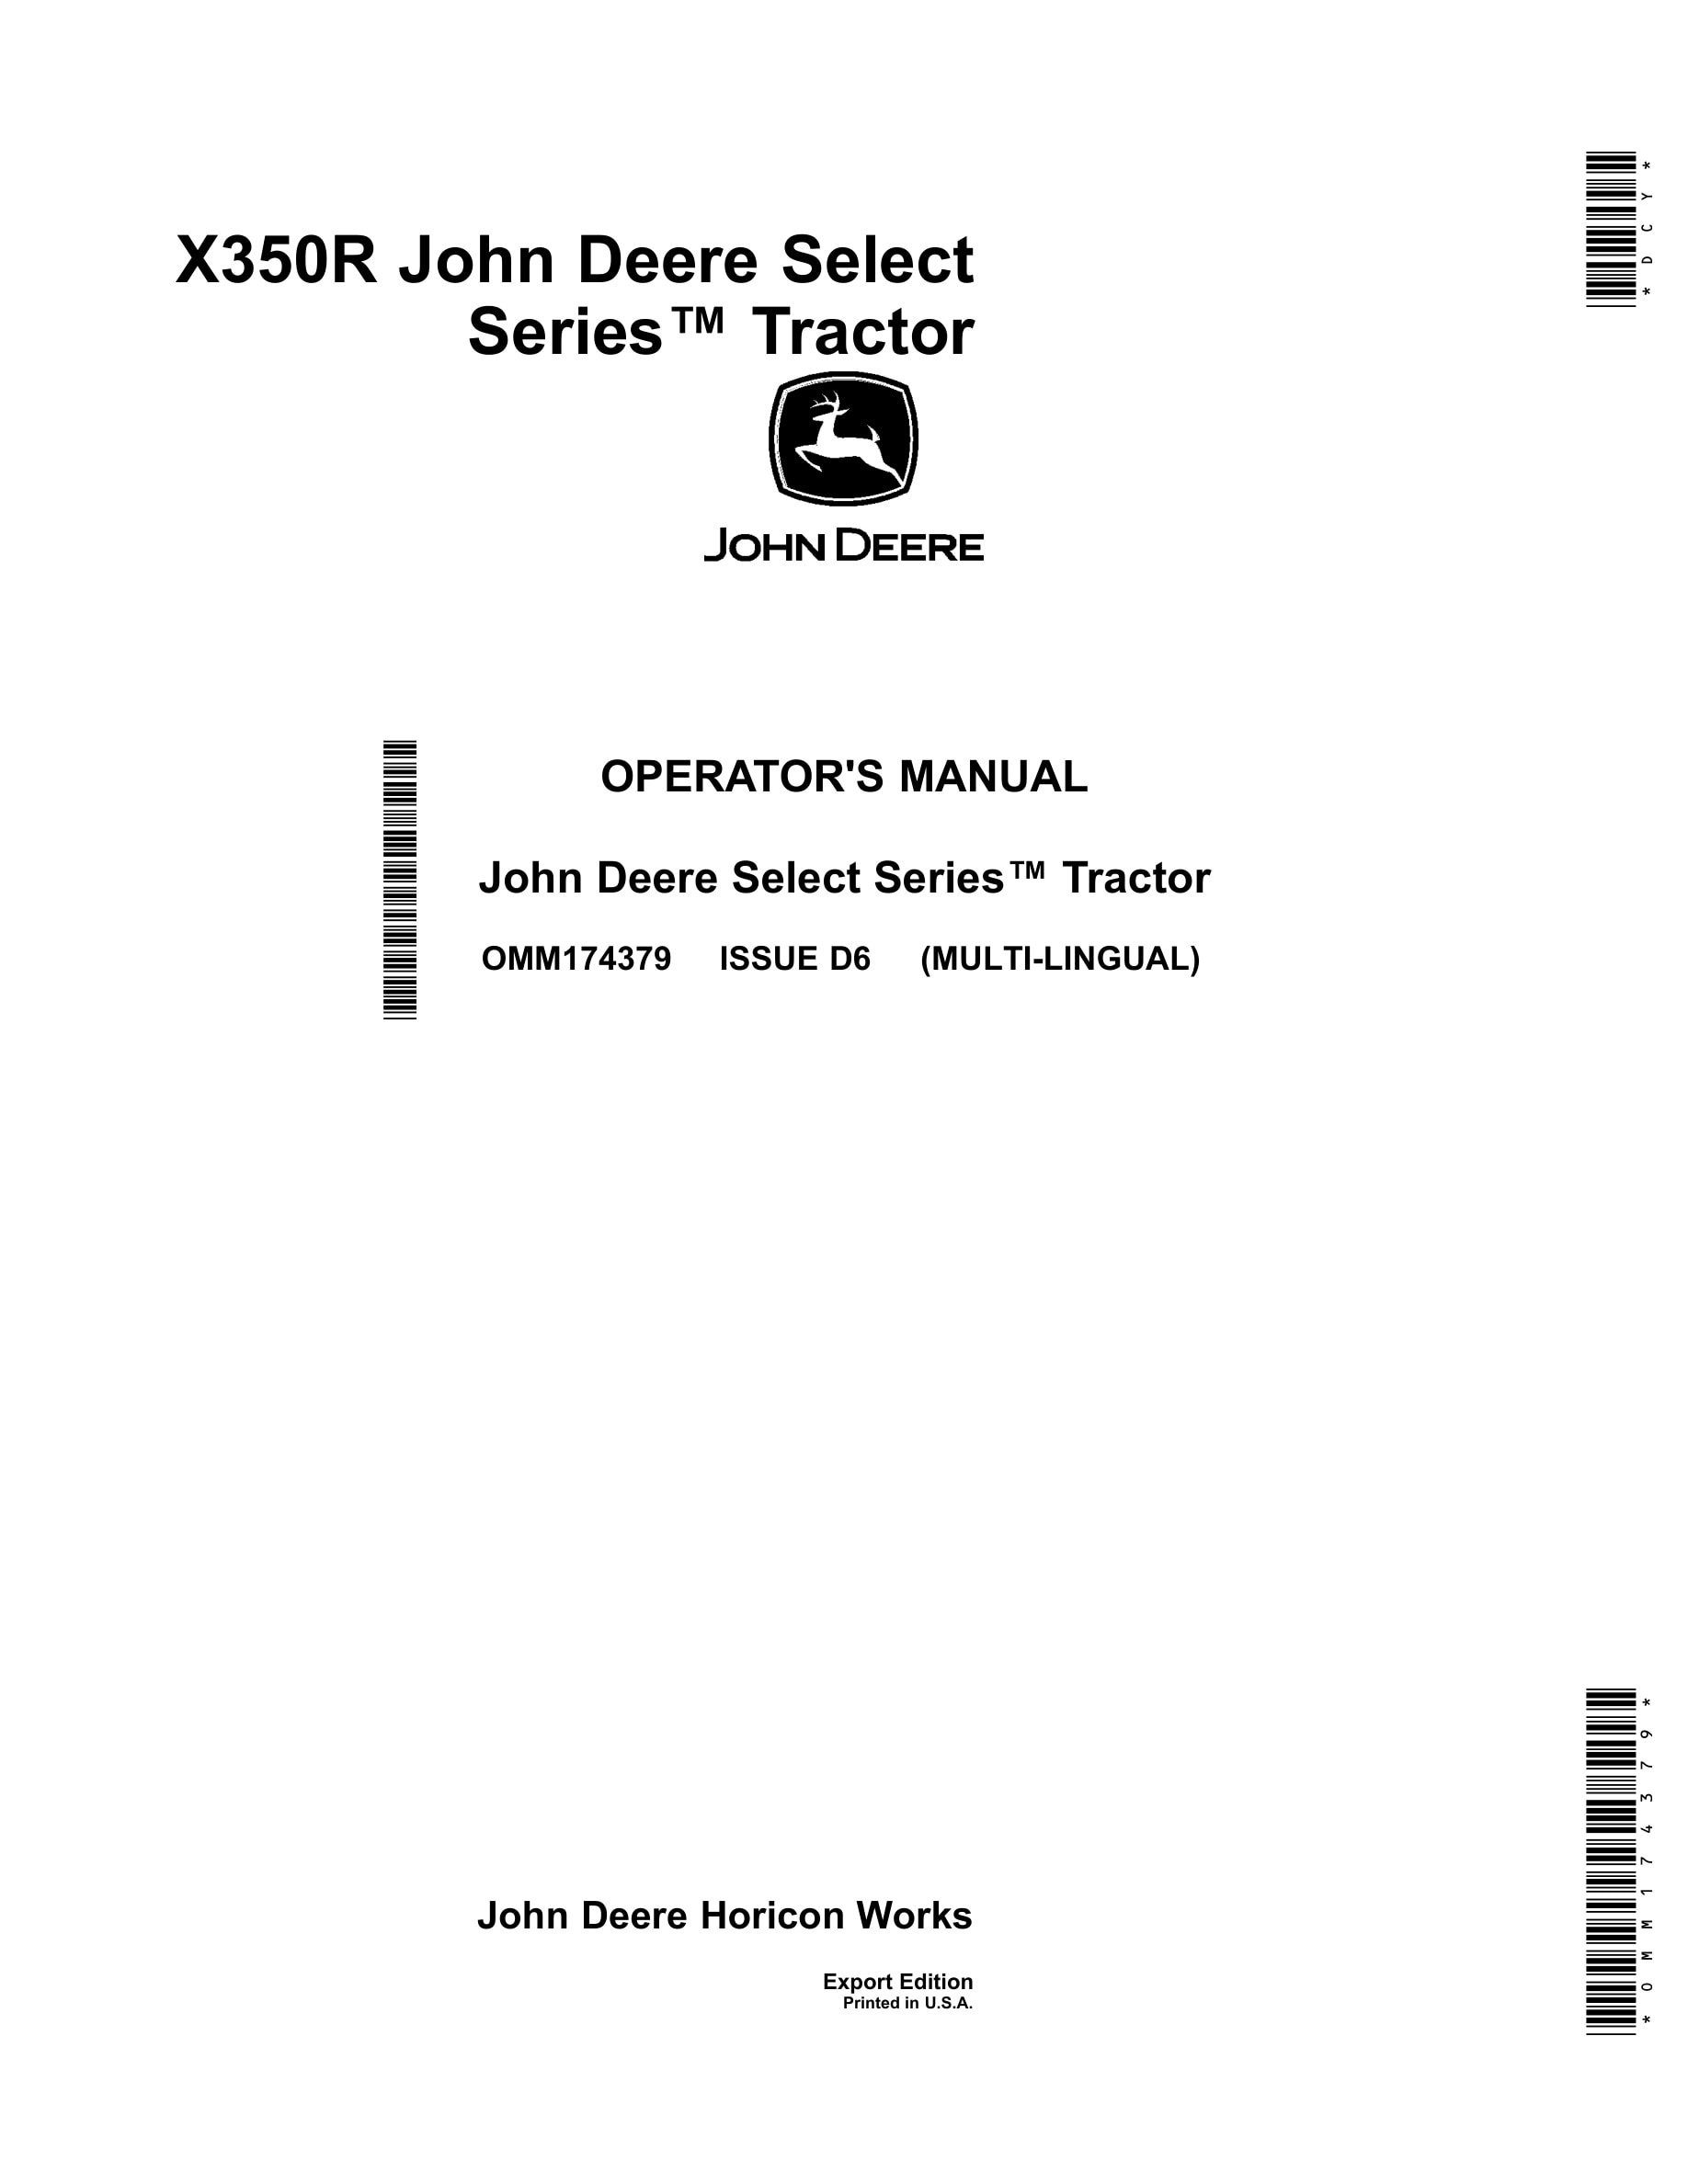 John Deere X350r Select Series Tractors Operator Manual OMM174379-1